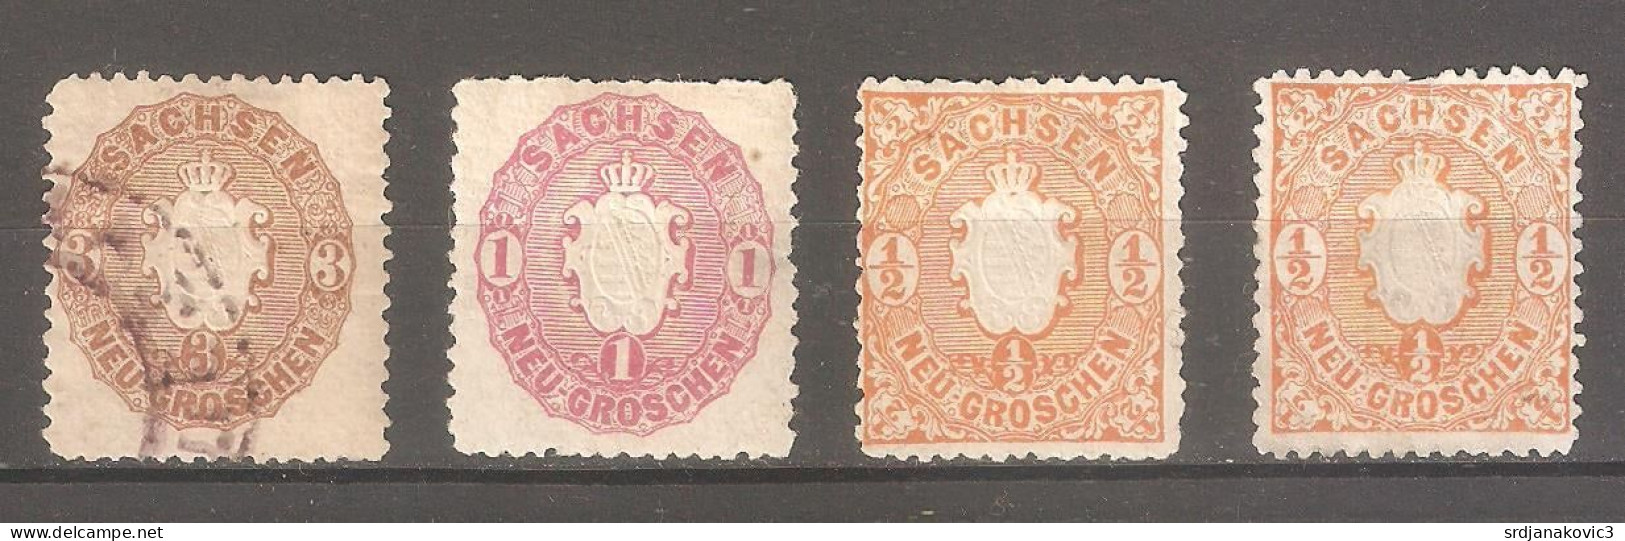 Saxony - Unused Stamps